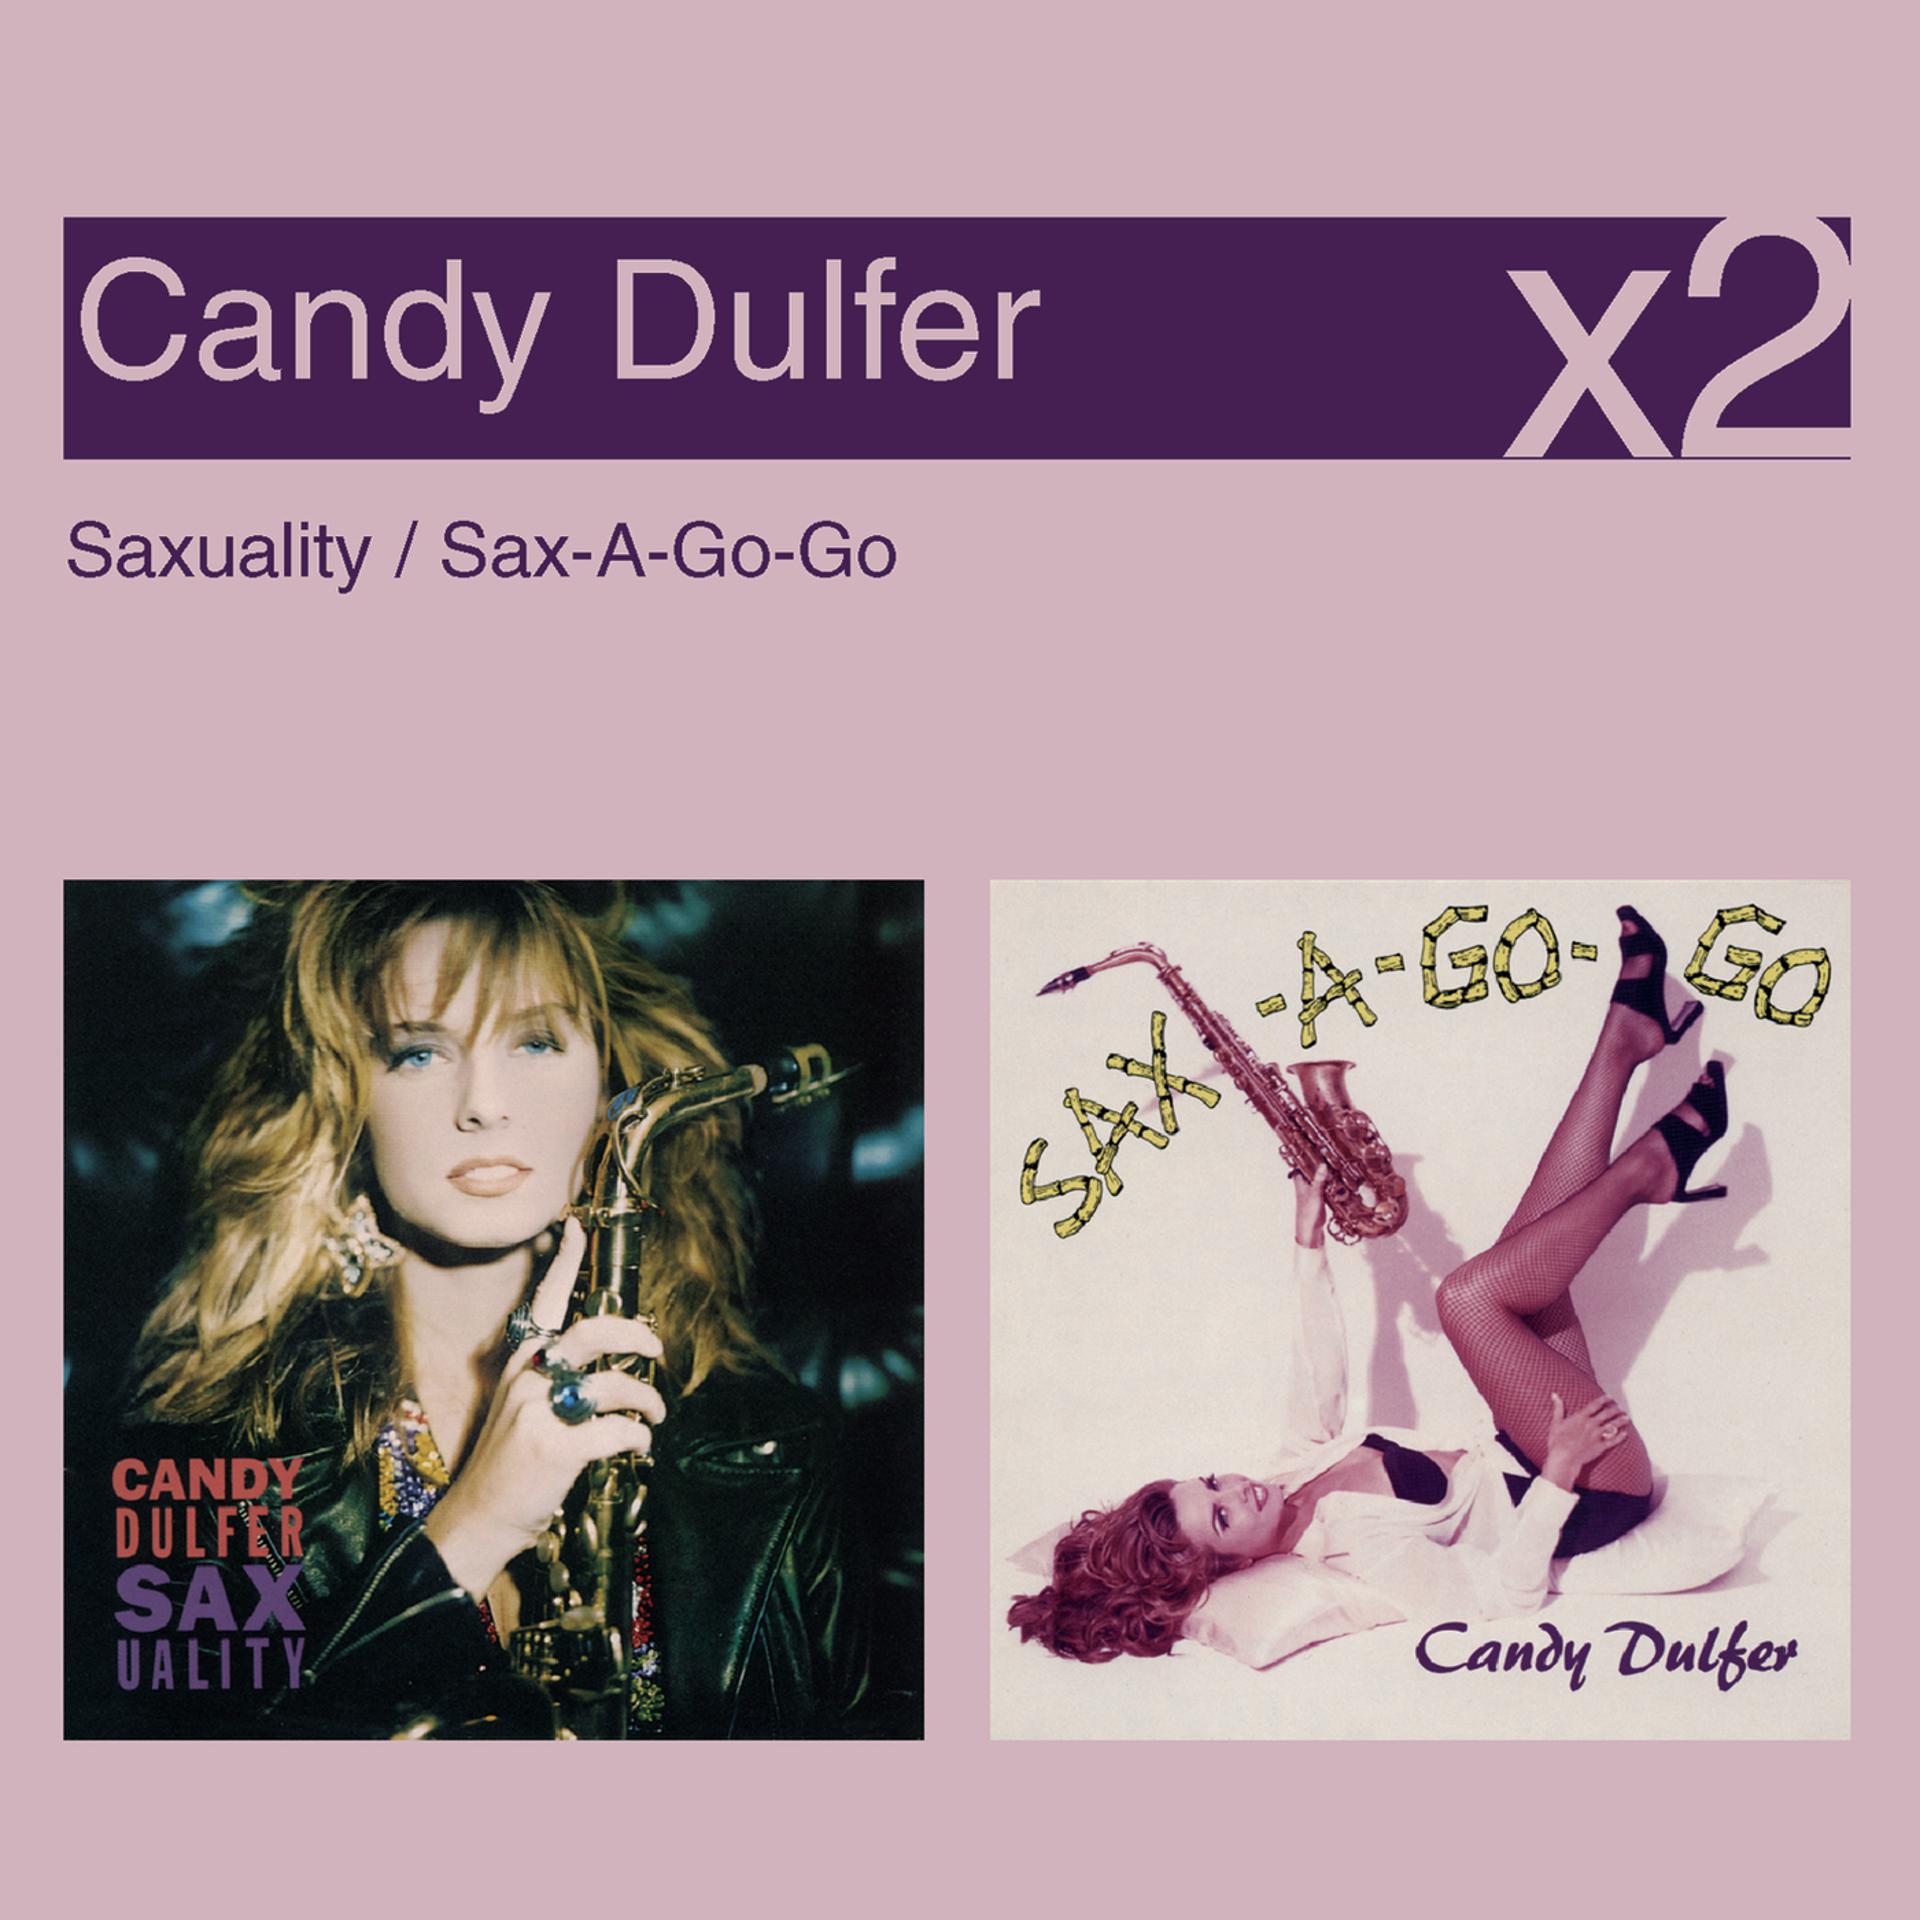 Кэнди Далфер. Saxuality Кэнди Далфер. Dulfer Candy "Saxuality".